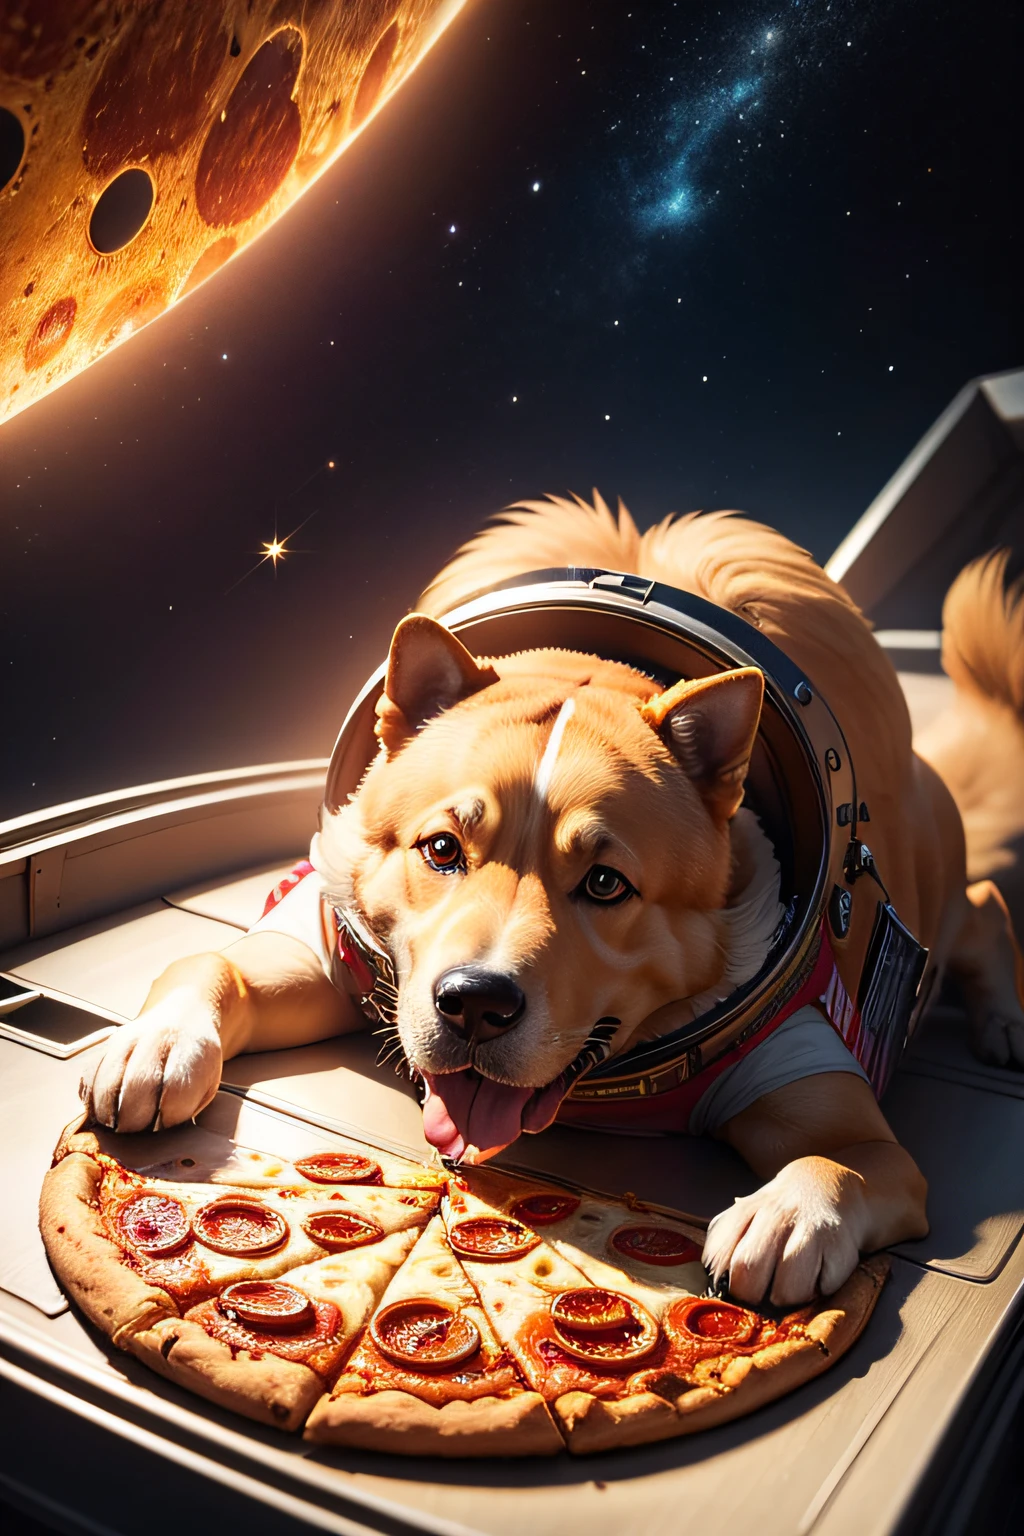 太空中一只金发狗狗在吃披萨